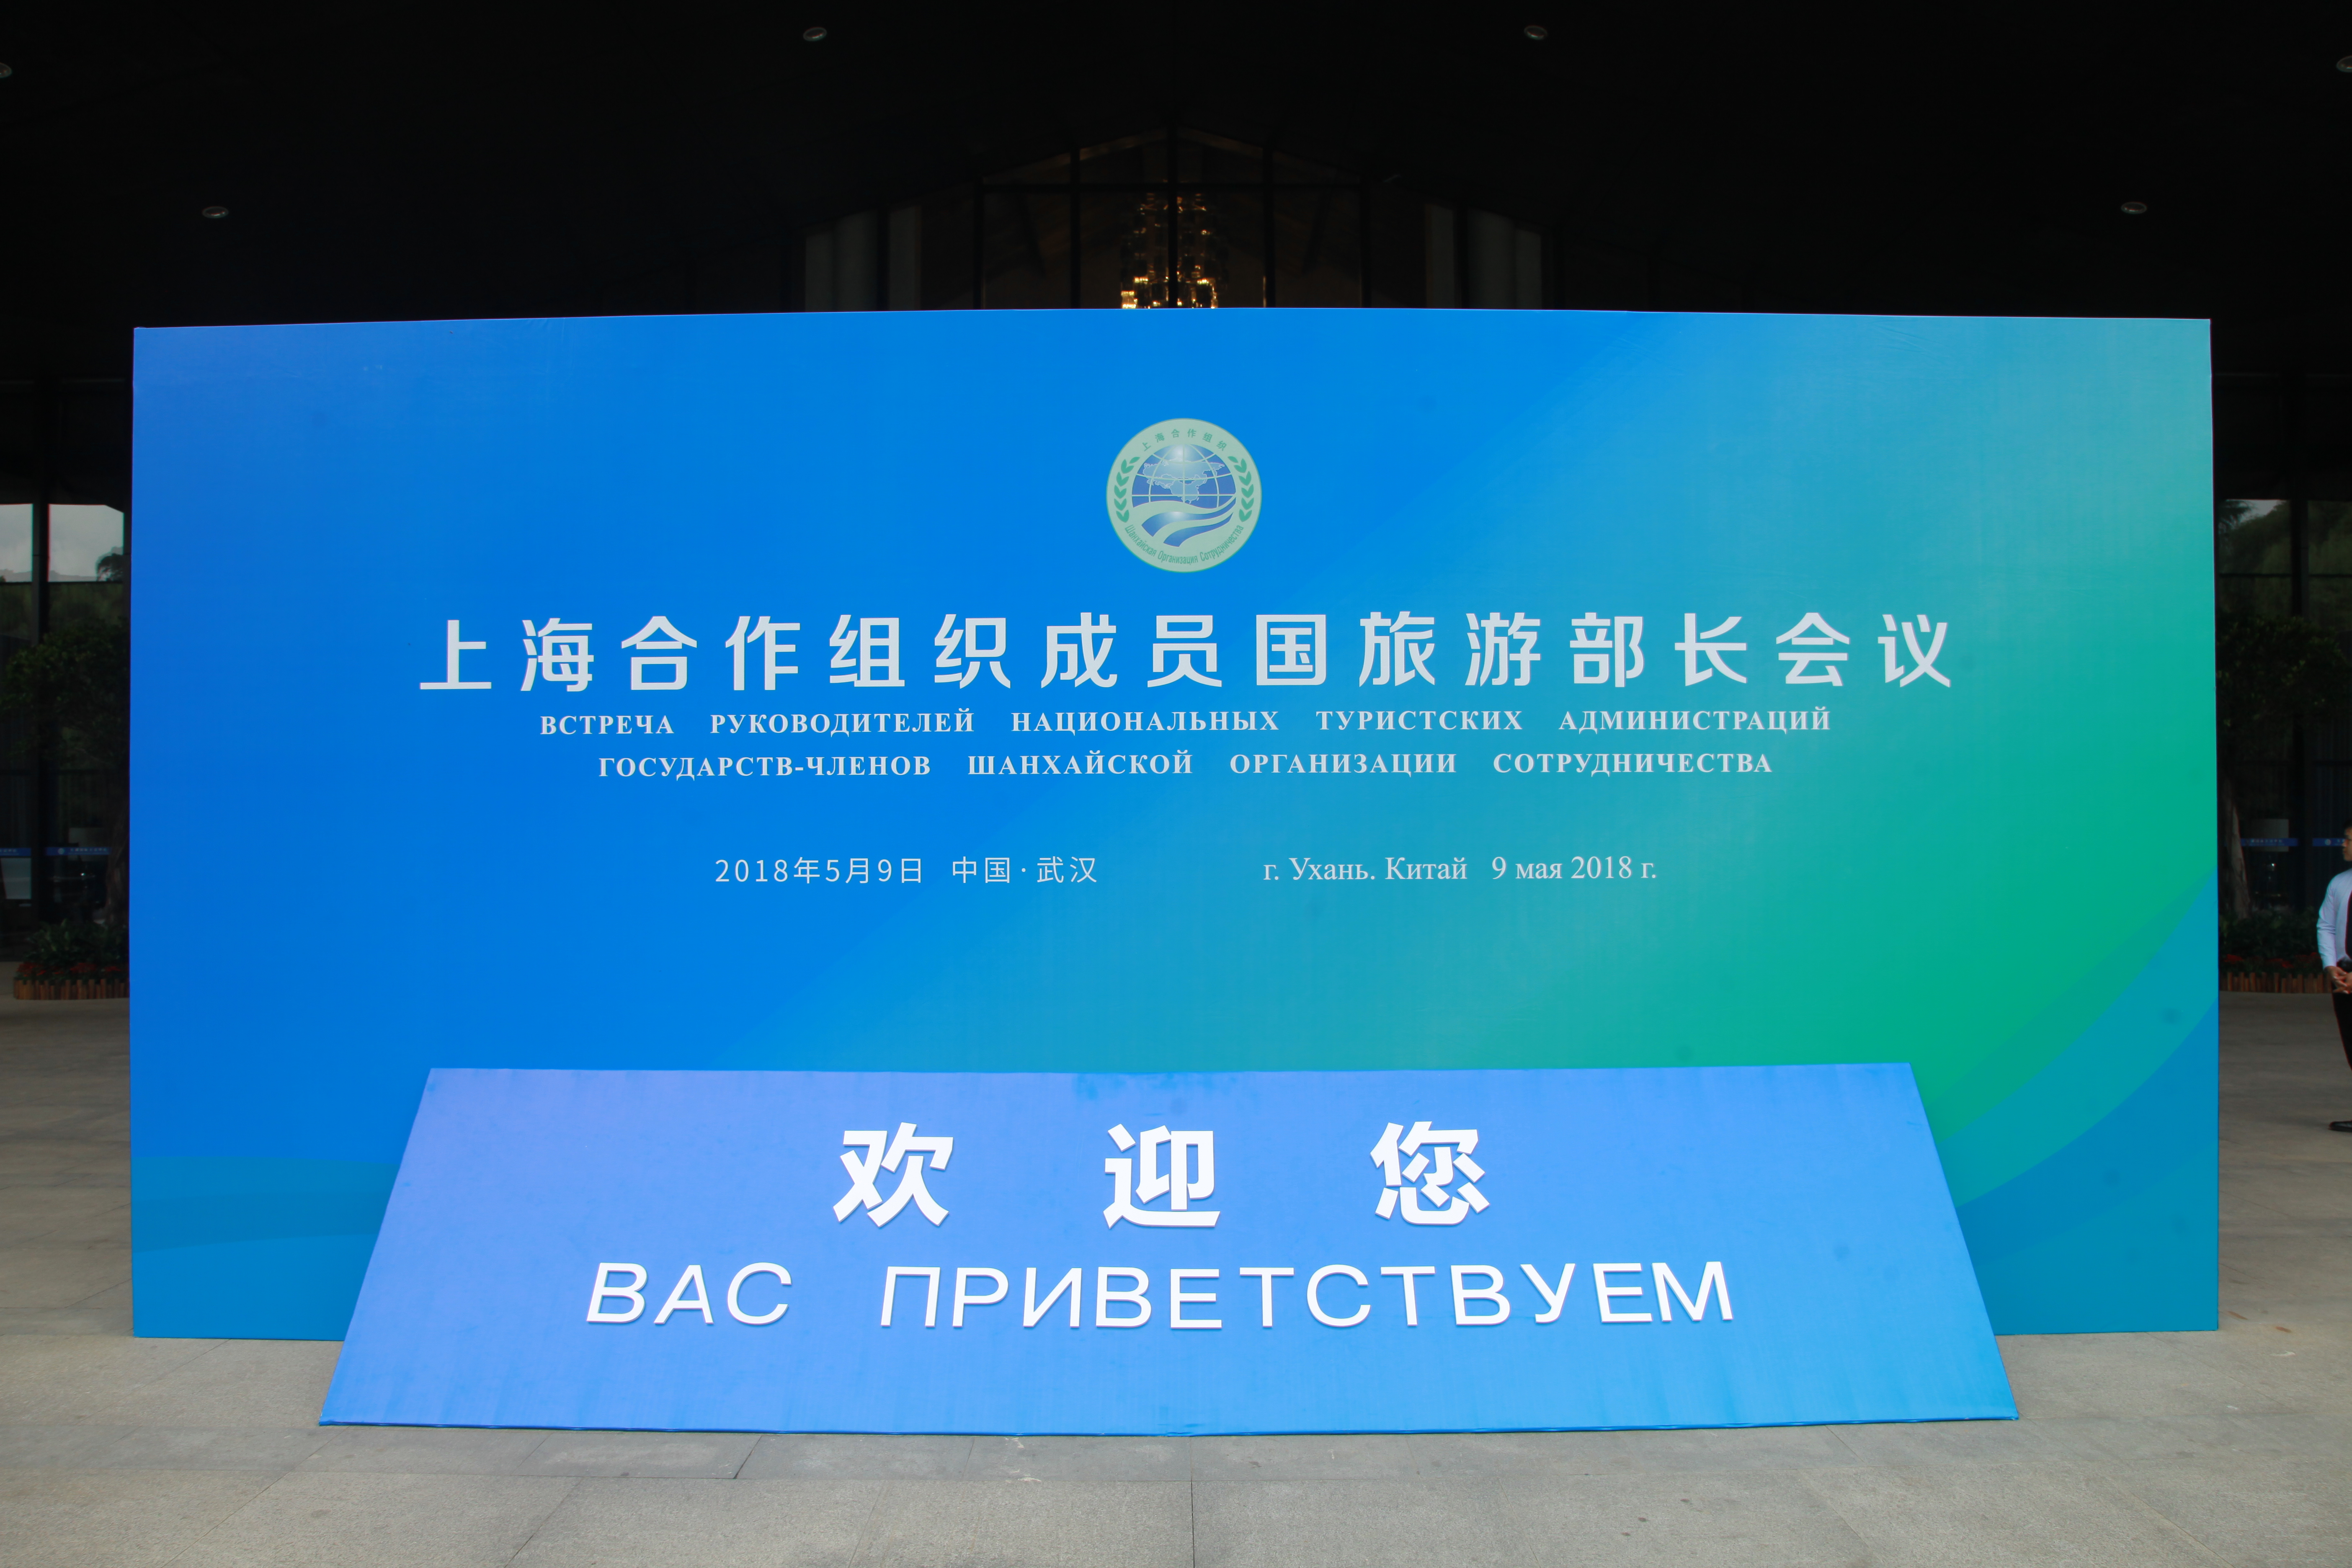 2018年 上海合作组织旅游合作研讨会